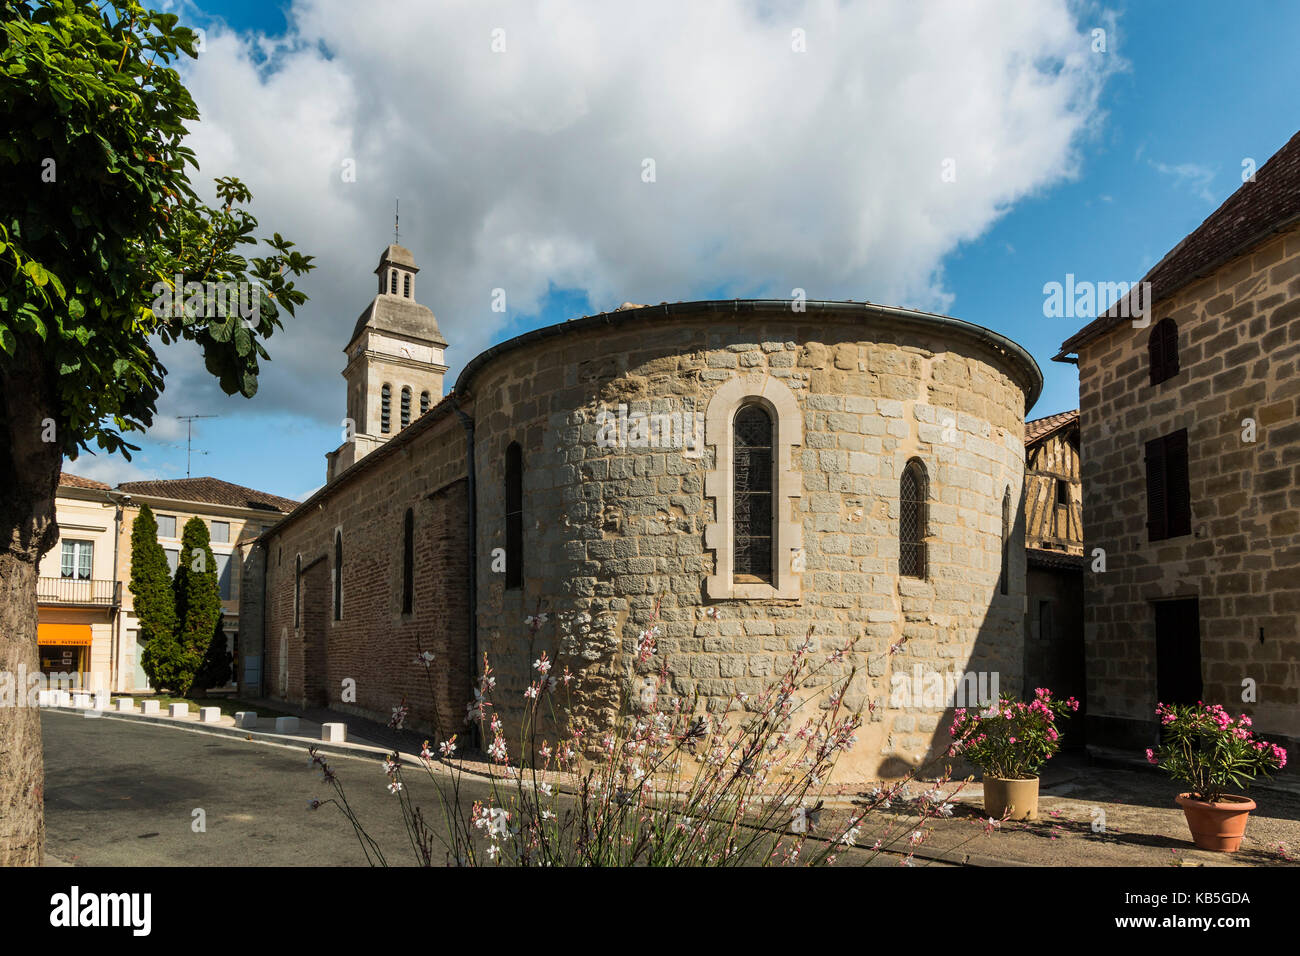 The 10th century St. Eutrope church, Dropt Valley village, Allemans-du-Dropt, Lot-et-Garonne, France Stock Photo